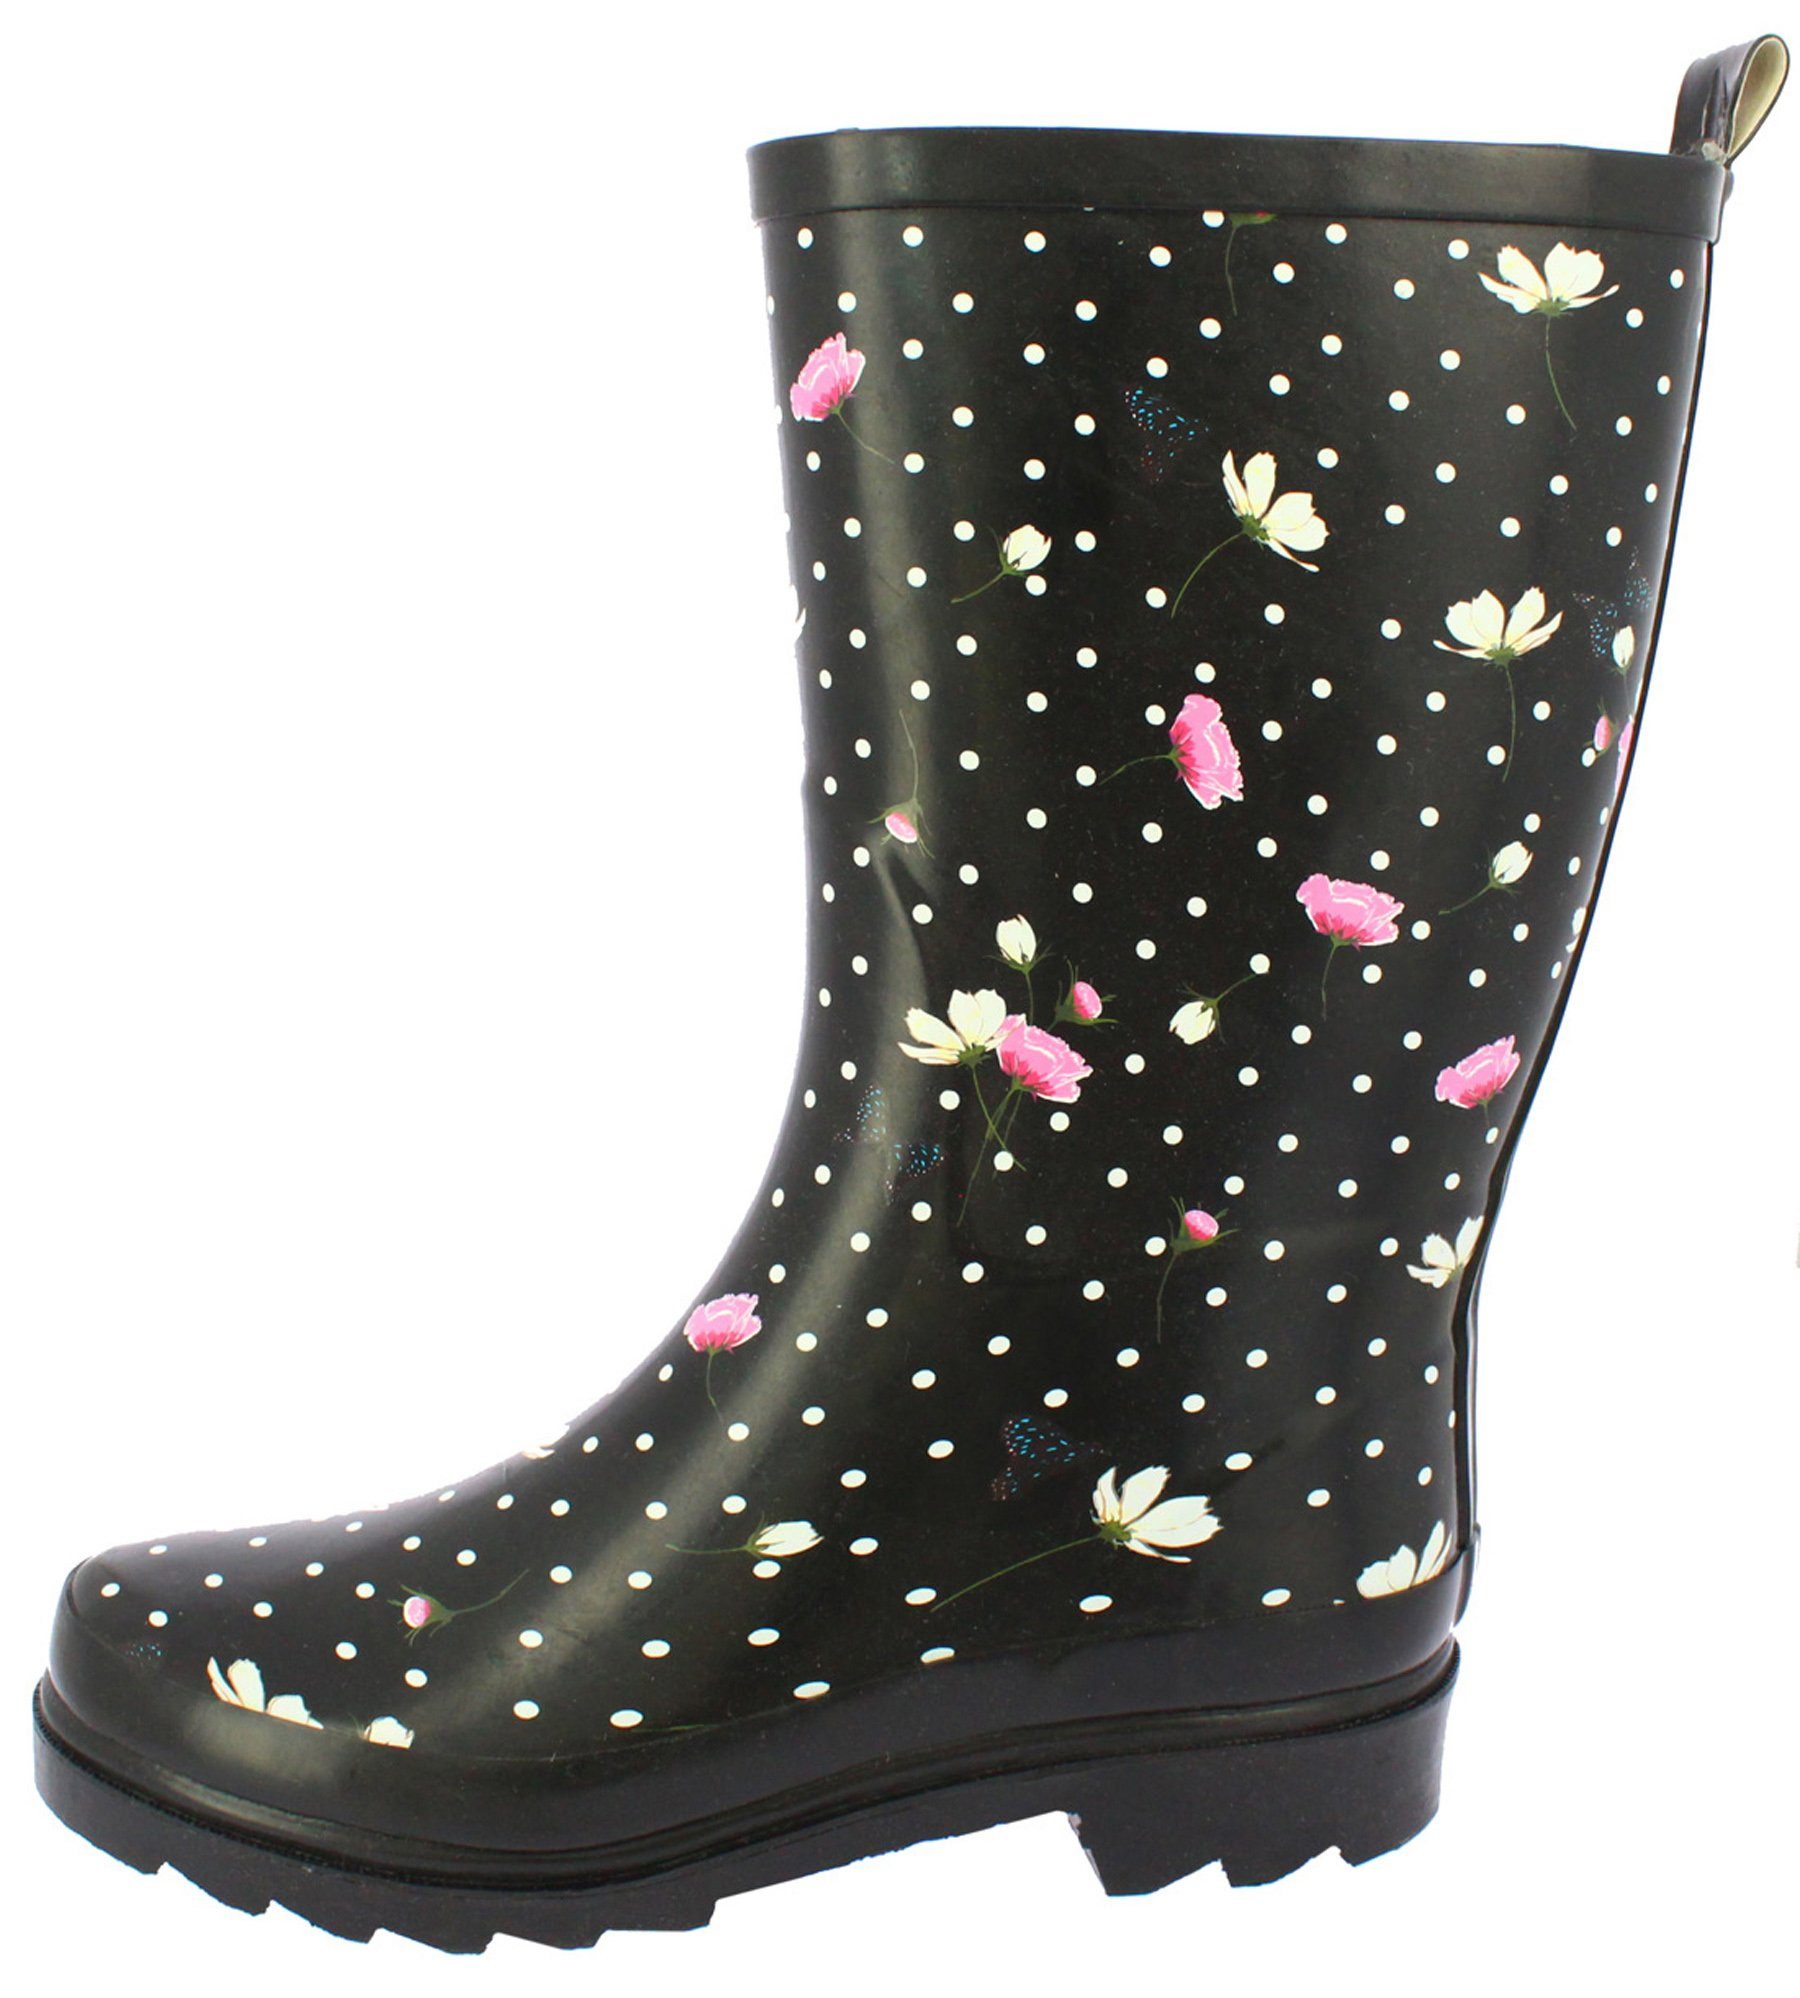 Beck "Blumenregen" romantischer Damen- Gummistiefel (wasserdichte Stiefel,  für trockene Füße bei Regenwetter) herausnehmbare innensohle, robuster  weicher Naturkautschuk